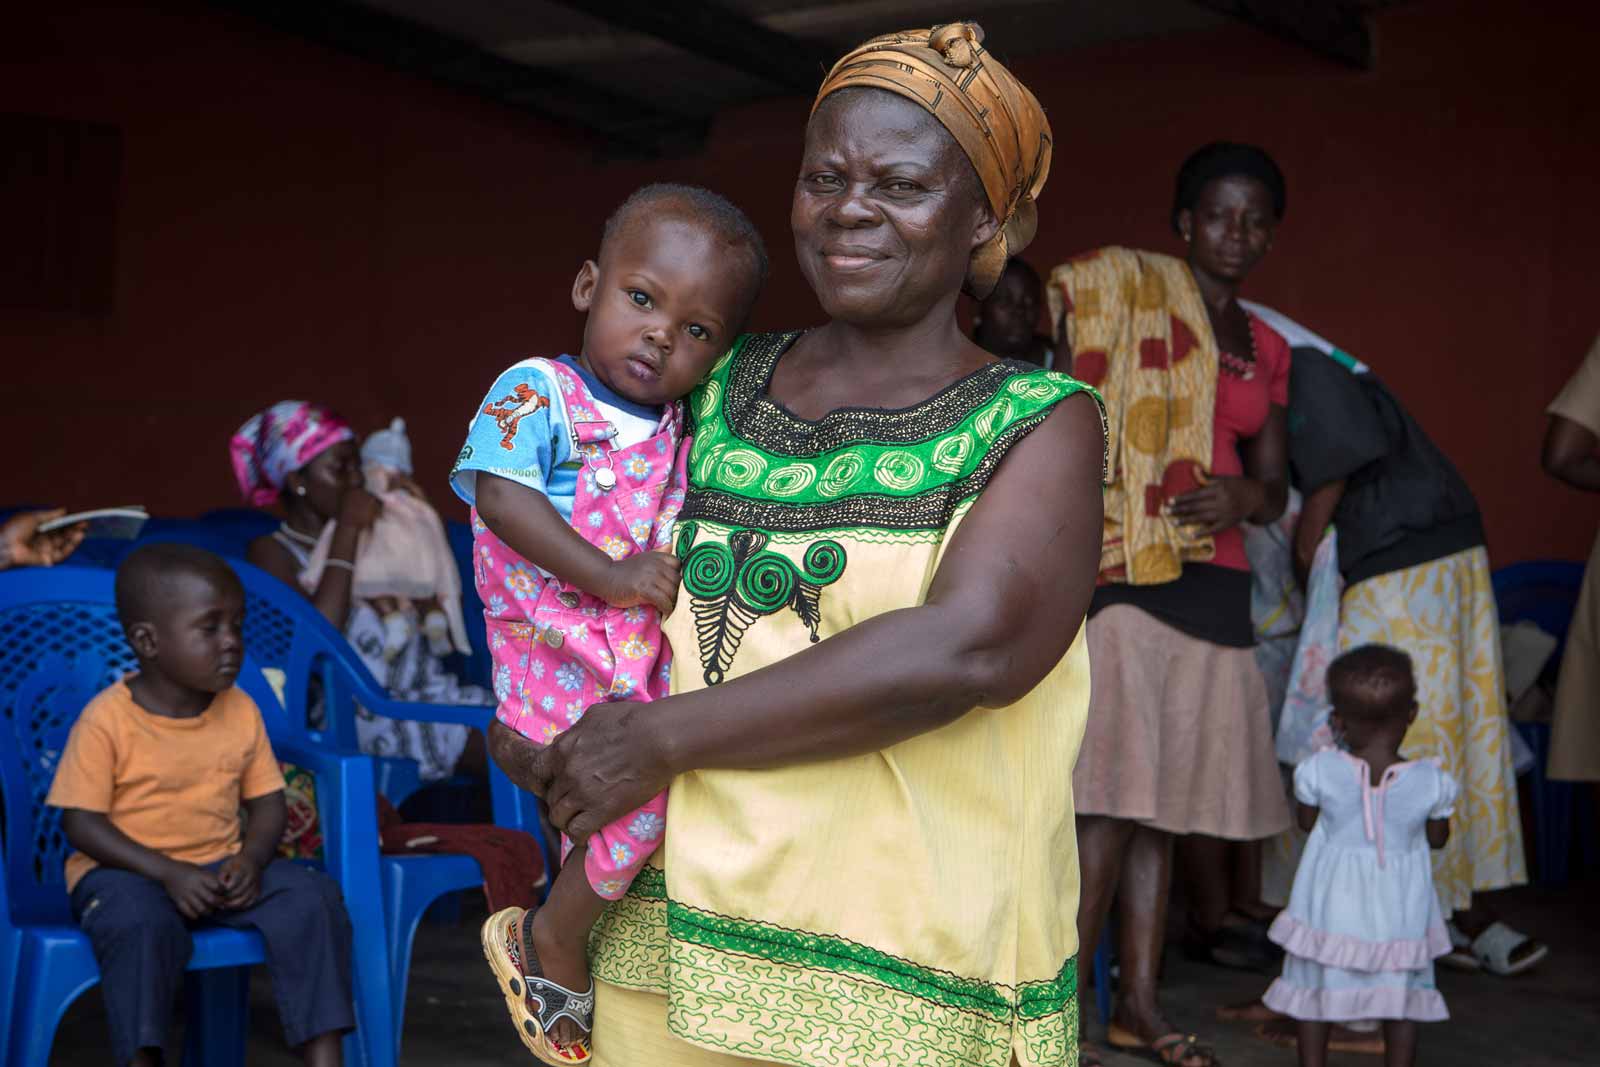   Esther Agiri a perdu sa sœur morte de la rougeole et a vu bon nombre d’enfants succomber à la diarrhée. Voici ce qu’elle nous dit à propos de son petit-fils Samwell, âgé de 16 mois : « Ce bébé a échappé à des souffrances parce qu’il a été vacciné. »